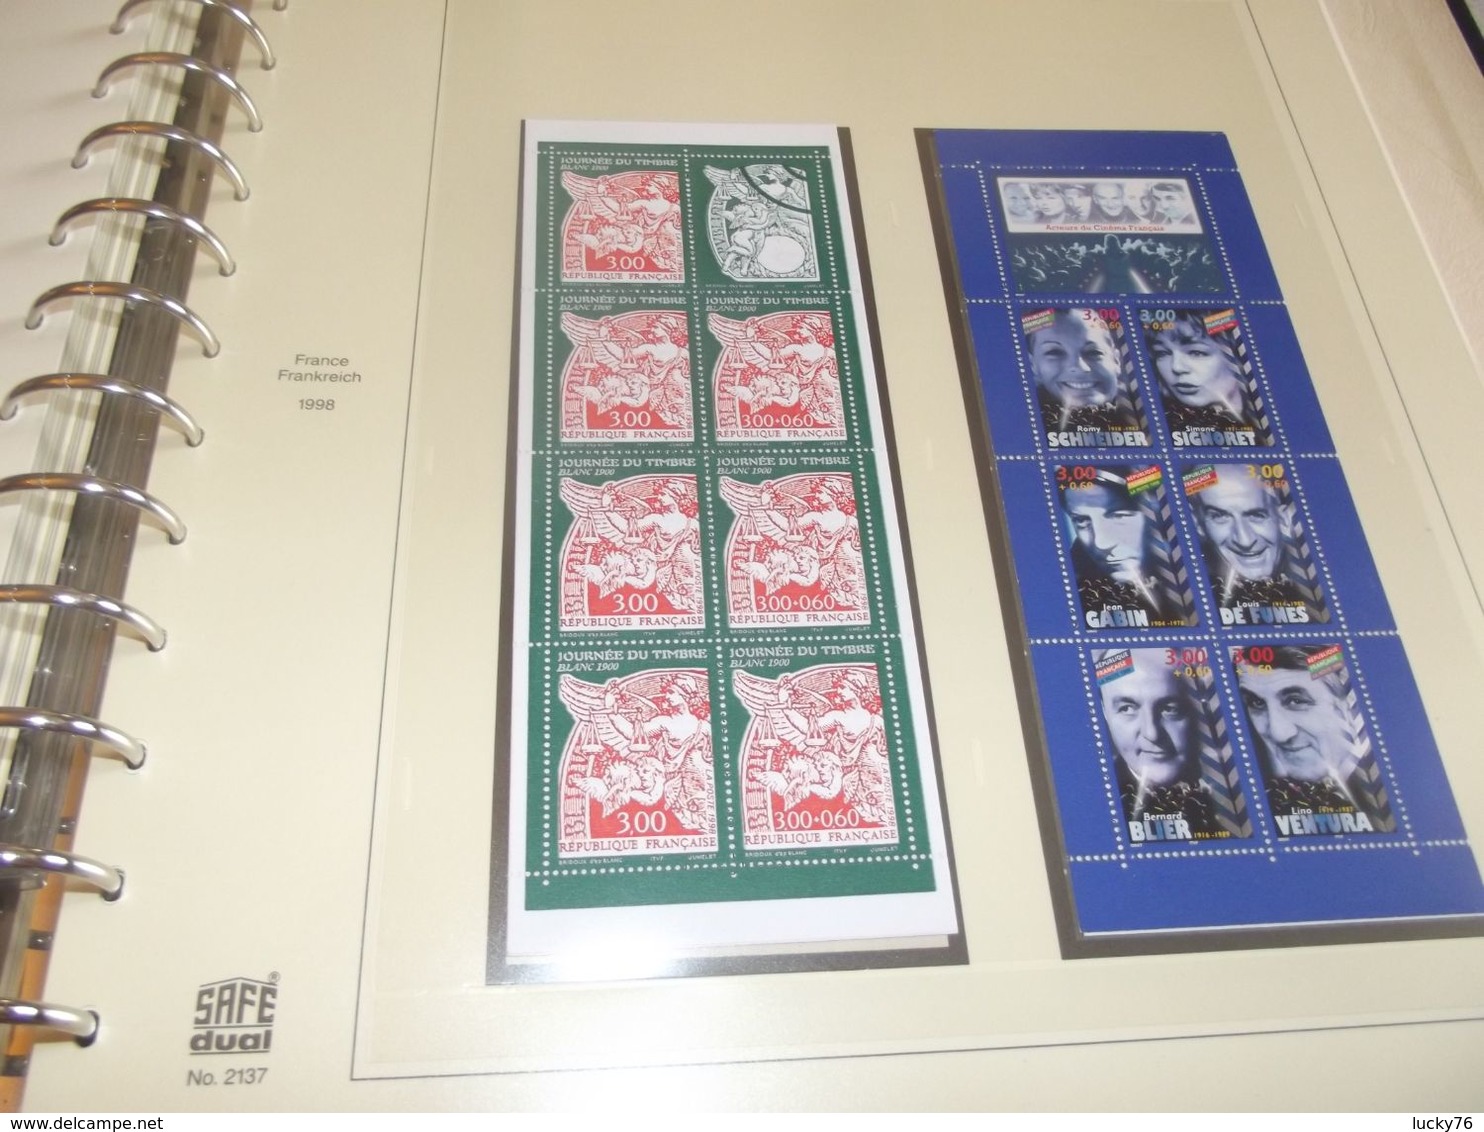 année 1994 a 1998 année complete sur feuille safe avec ou sans son classeur et son coffret manque aucun timbre ou bloc